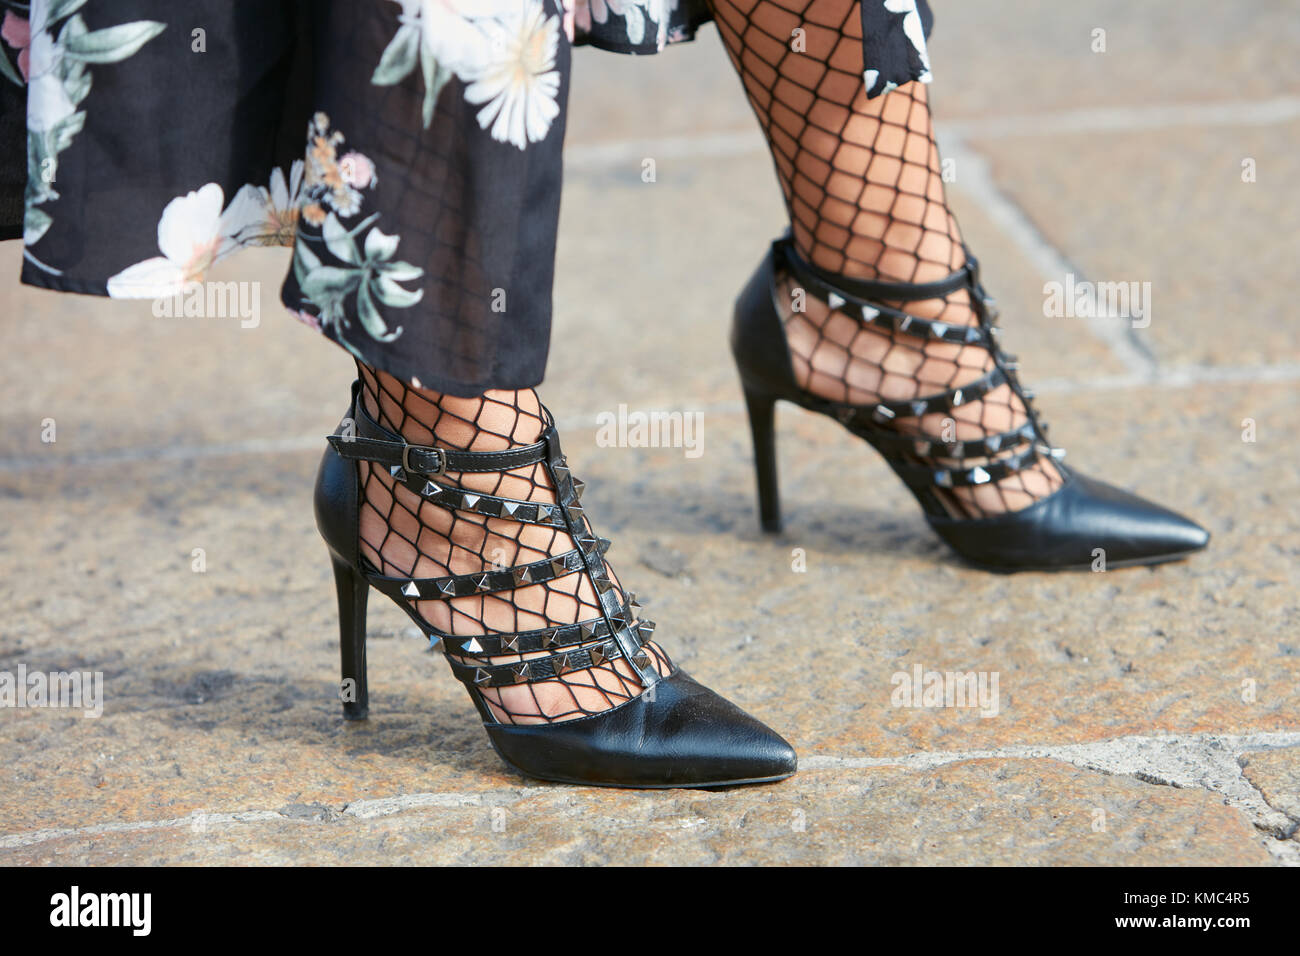 Milan - 23 septembre : femme avec des chaussures en cuir noir avec clous avant gabriele colangelo fashion show, Milan Fashion week street style sur s Banque D'Images